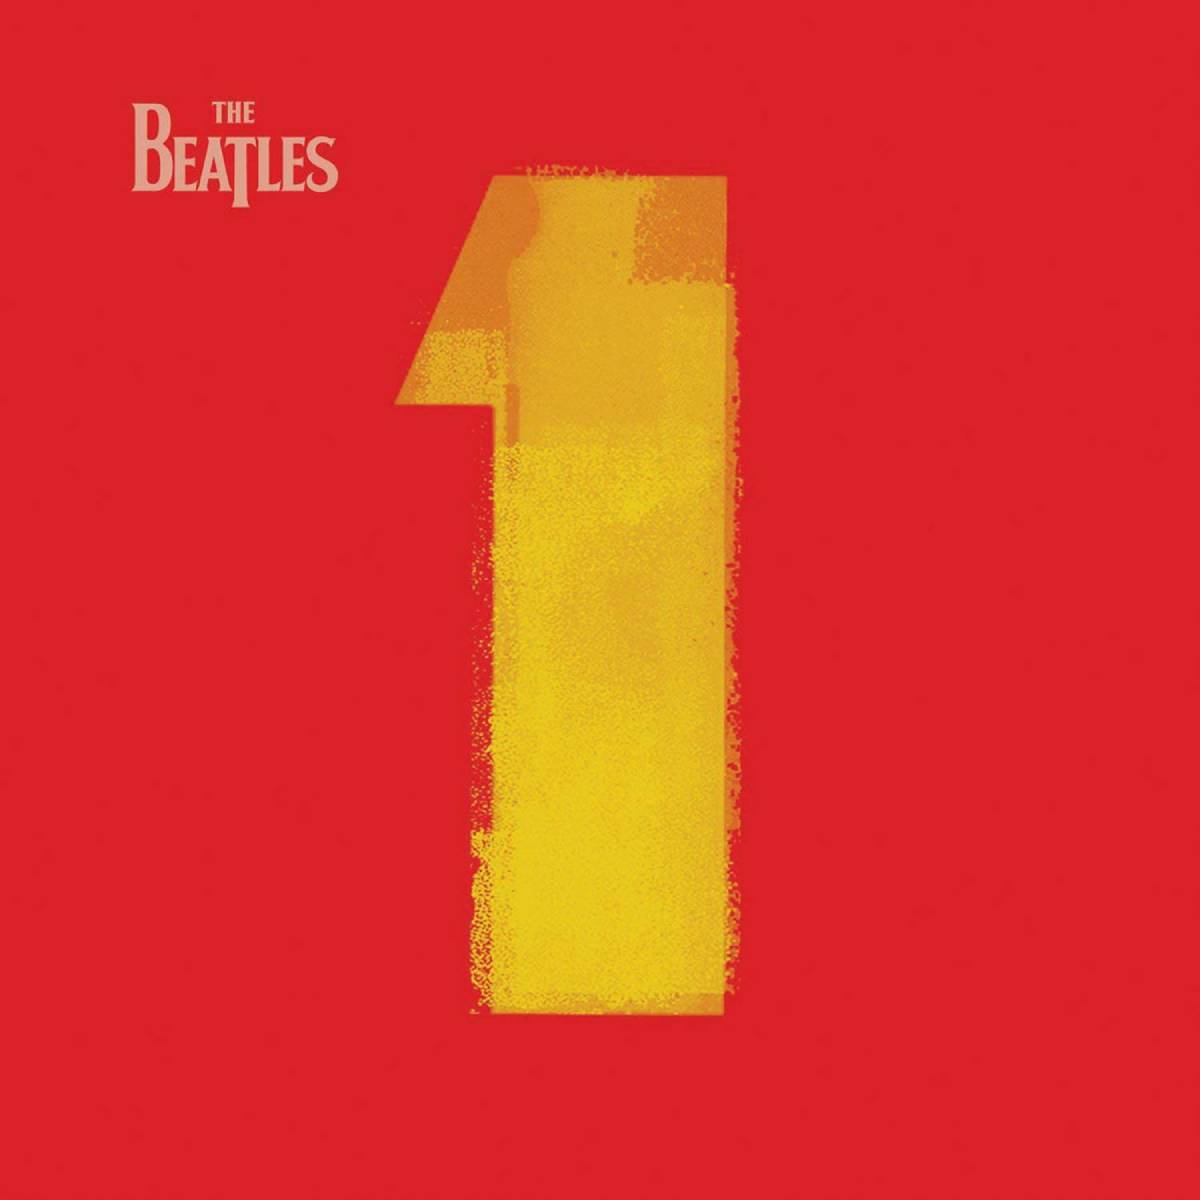 Couverture de la compilation des Beatles intitulée "1".